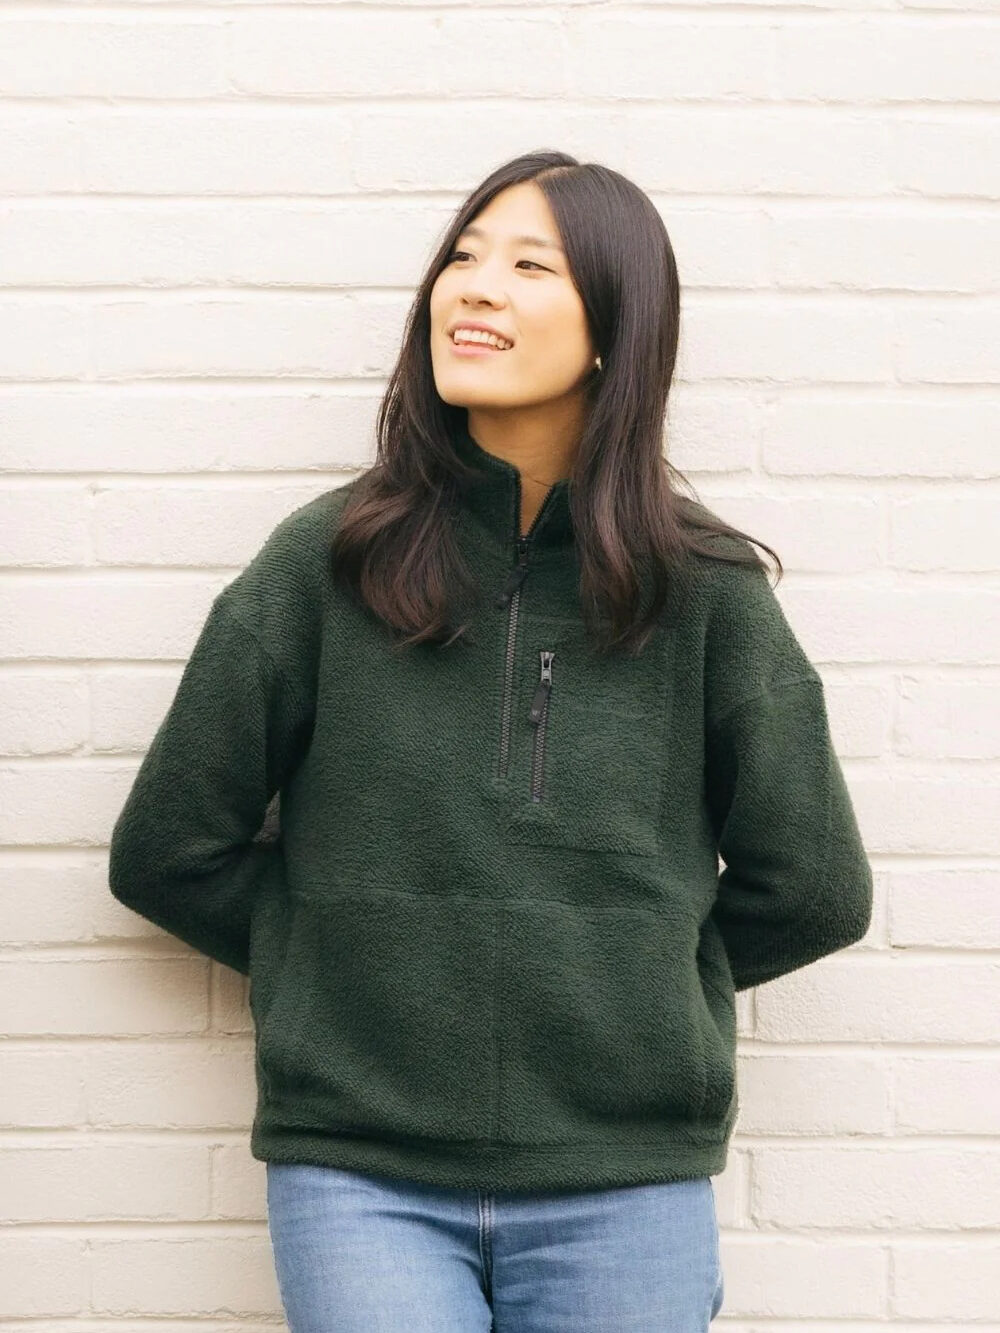 A model wearing a half zip green fleece sweater from Yes Friends.